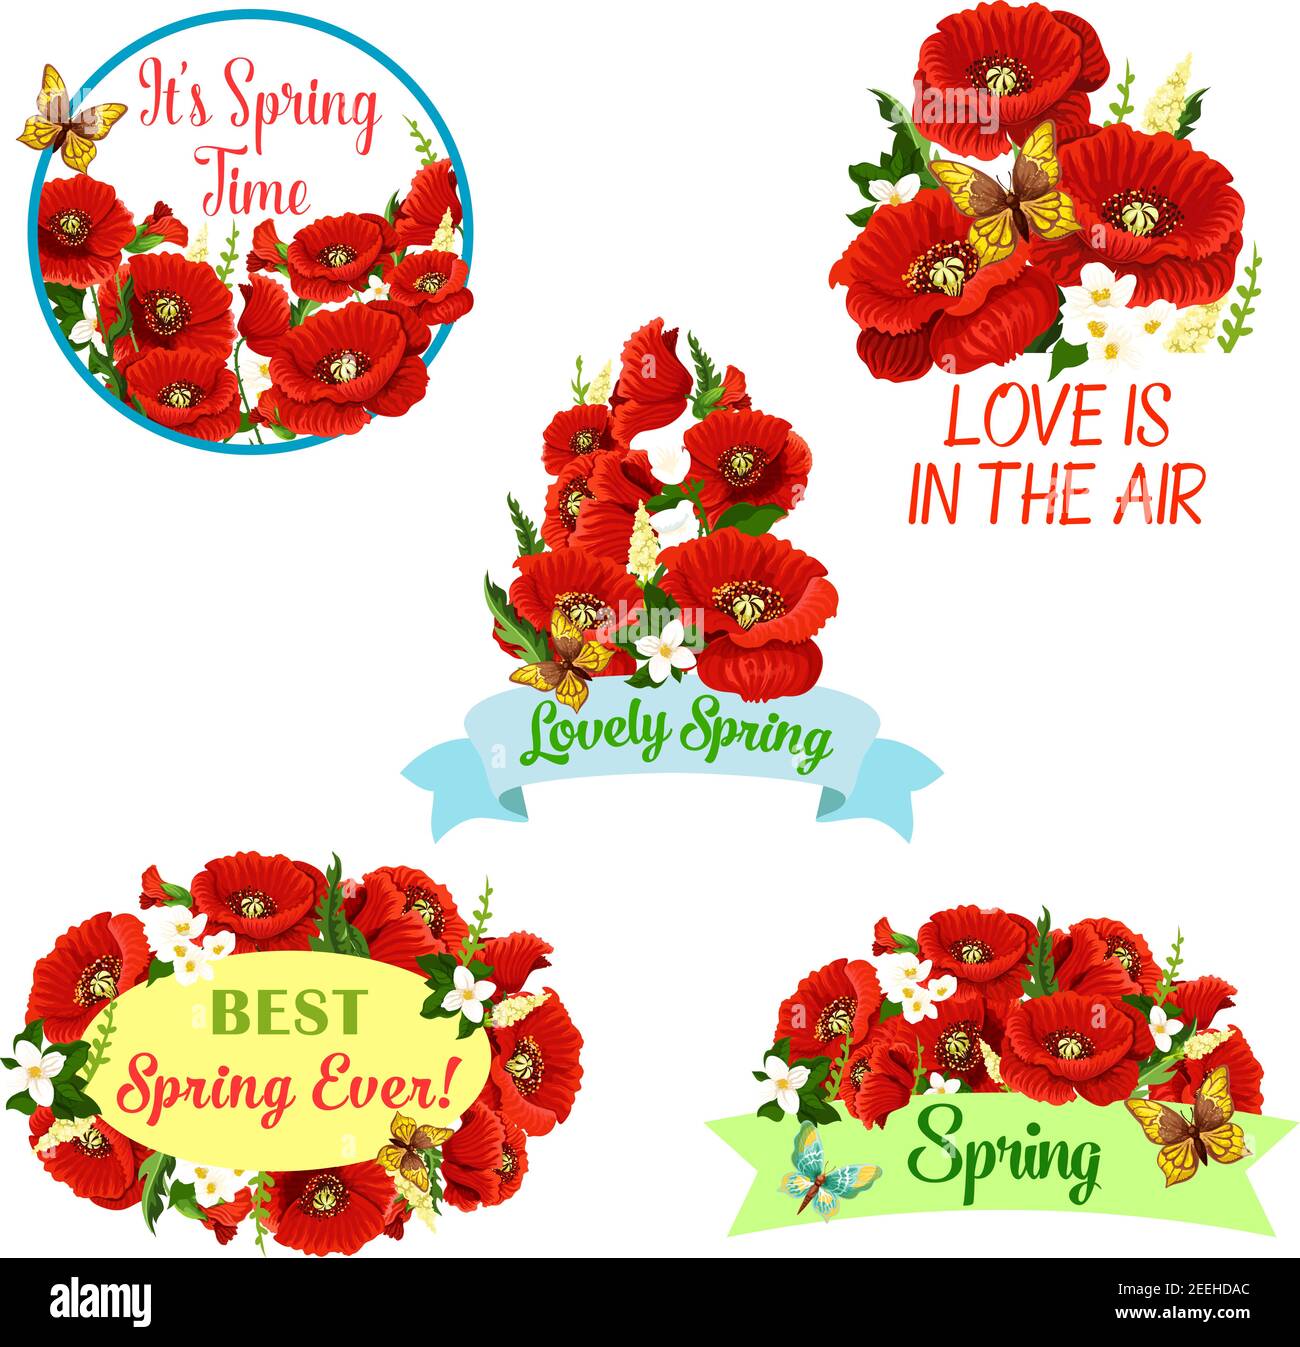 Corona di fiori primaverili e grappoli floreali per il disegno vettoriale di saluto. Fiori di papavero rosso in fiore, gemme di fiori daisy o orchidee e bouquet di fiorire Illustrazione Vettoriale